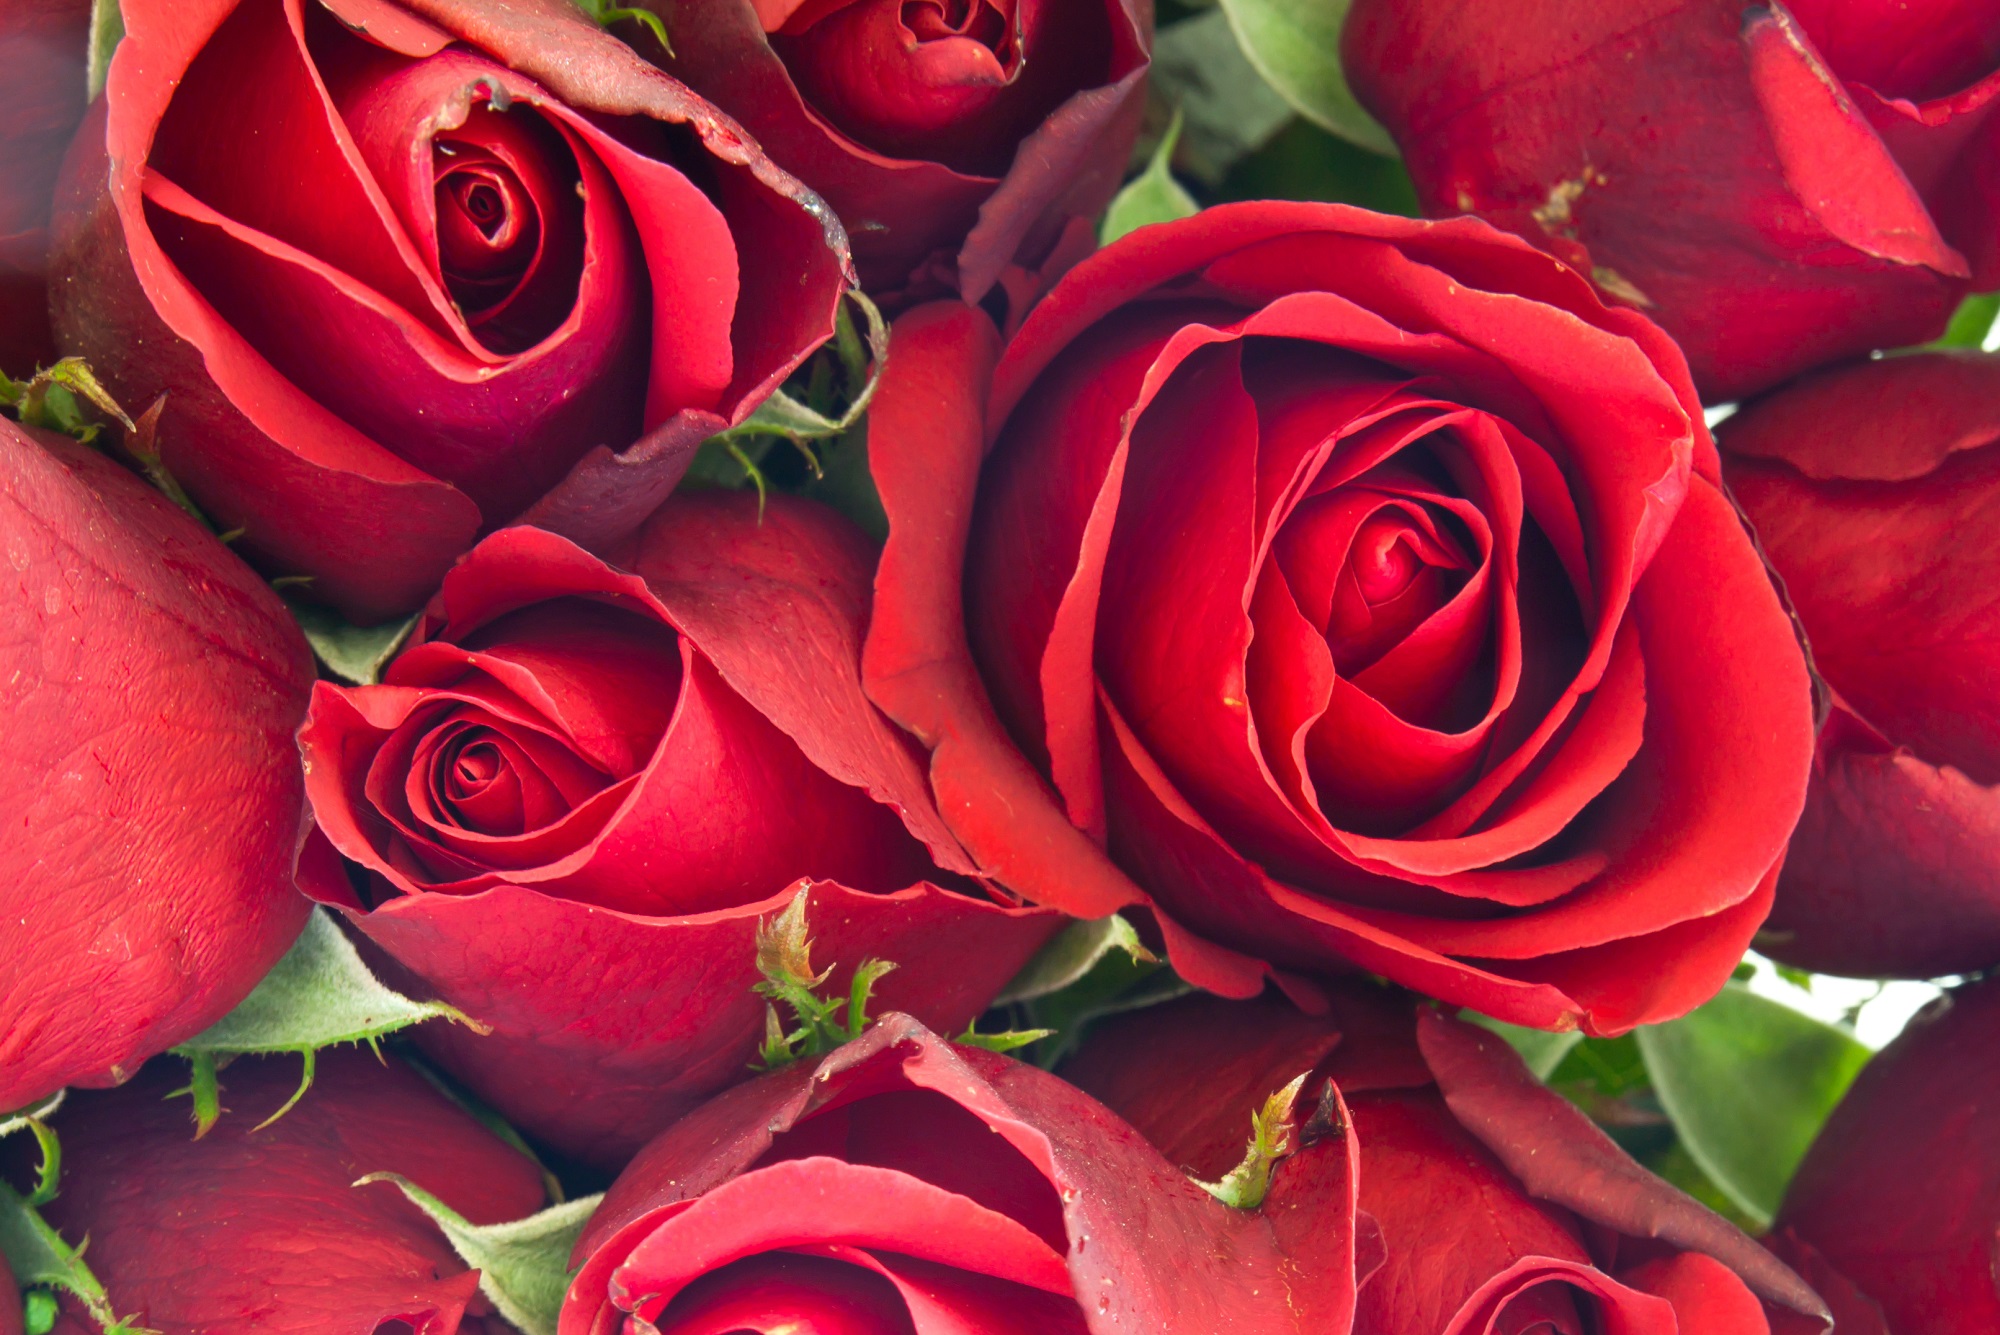 Hoa hồng đỏ là một biểu tượng quen thuộc của lễ Valentine. Hãy xem hình ảnh liên quan để chiêm ngưỡng vẻ đẹp đặc biệt của loài hoa này và để cảm nhận được tình yêu và sự ngọt ngào mà nó đại diện.